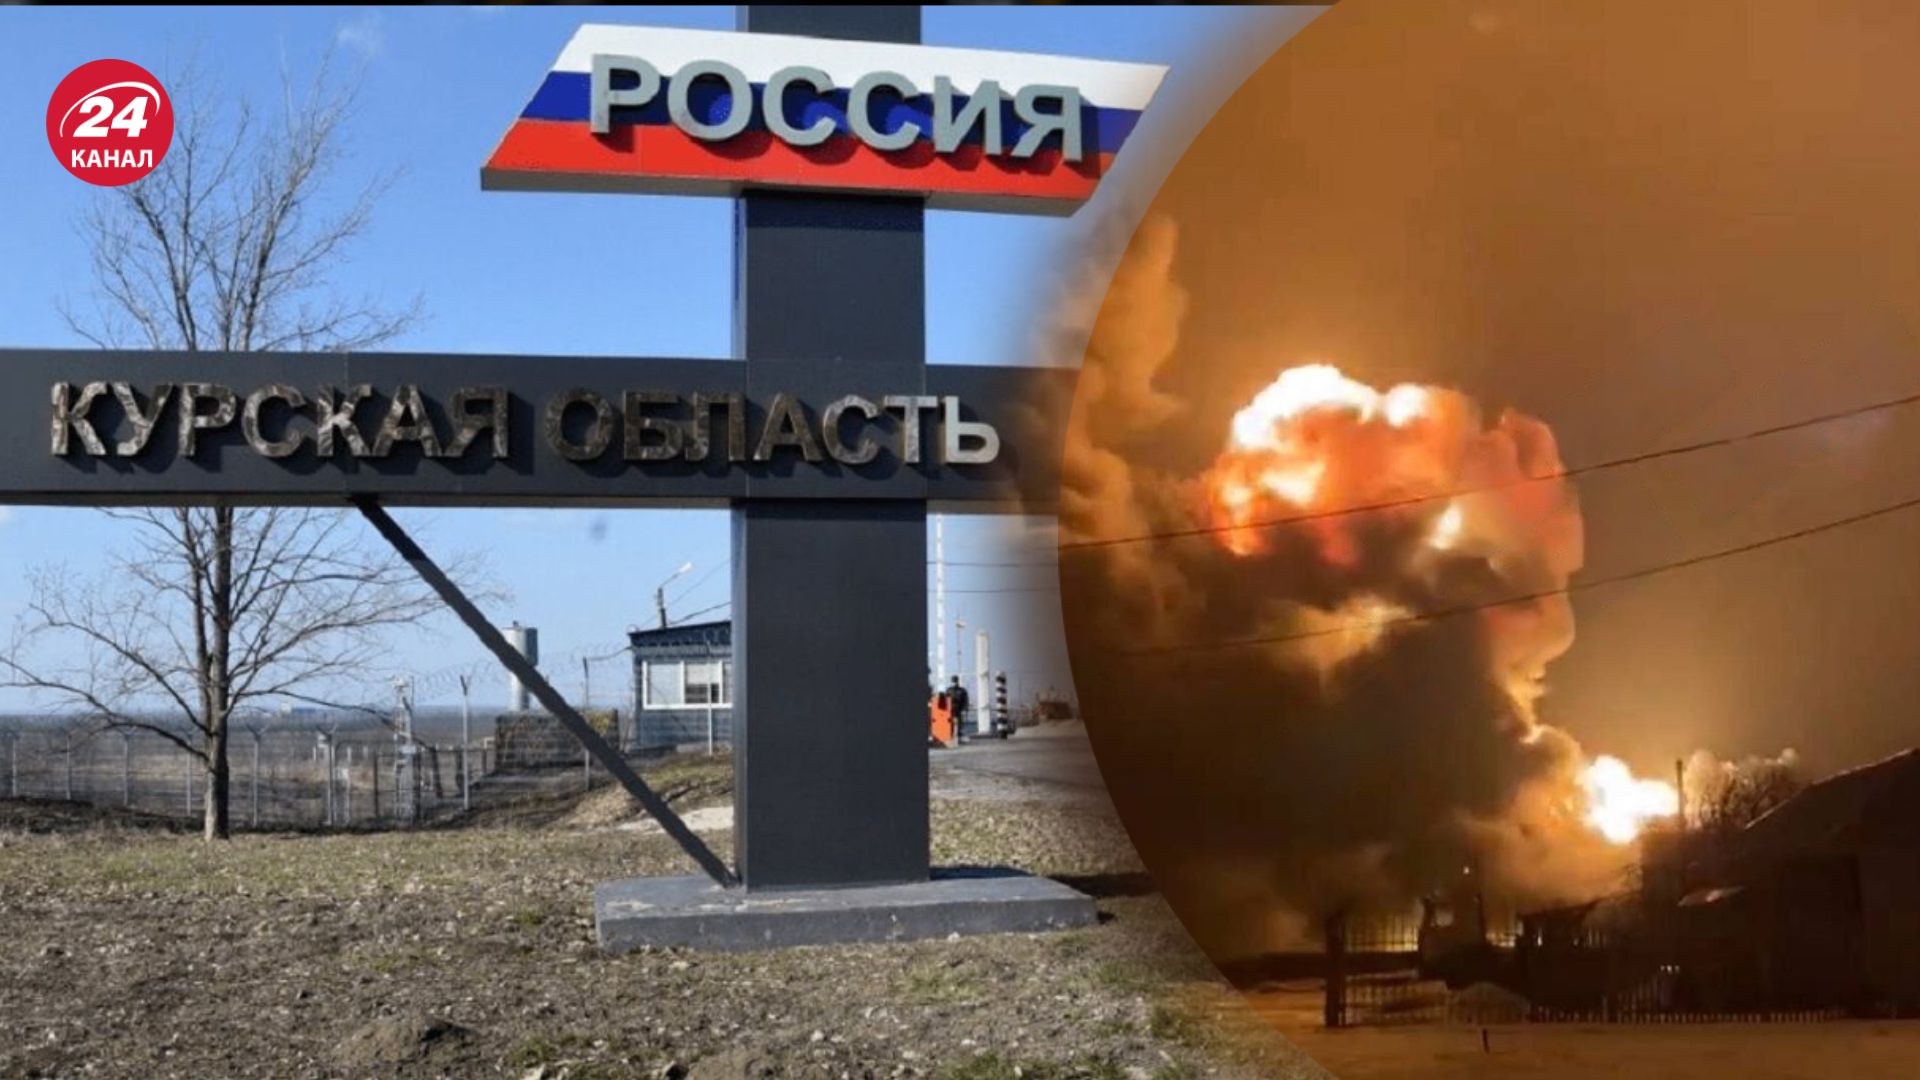 Нафтобаза спалахнула у Курській області